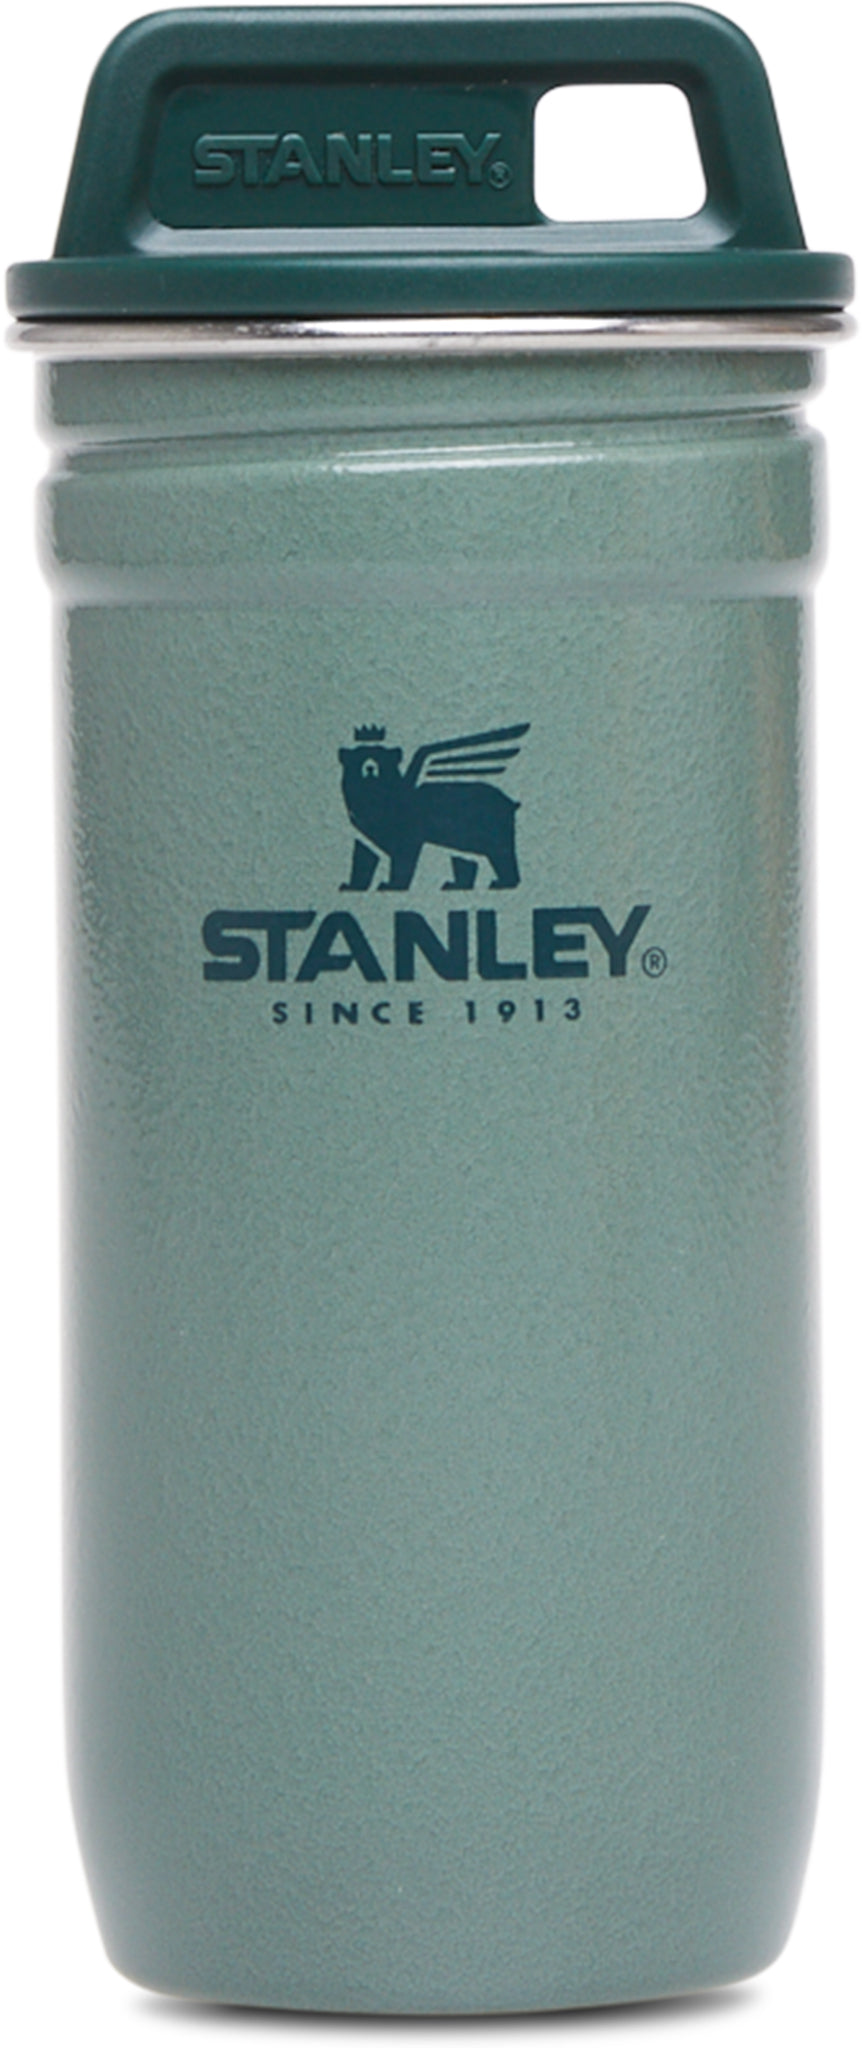 Stanley Hammertone Green 20 oz Nested Stainless Steel Shotglass Set